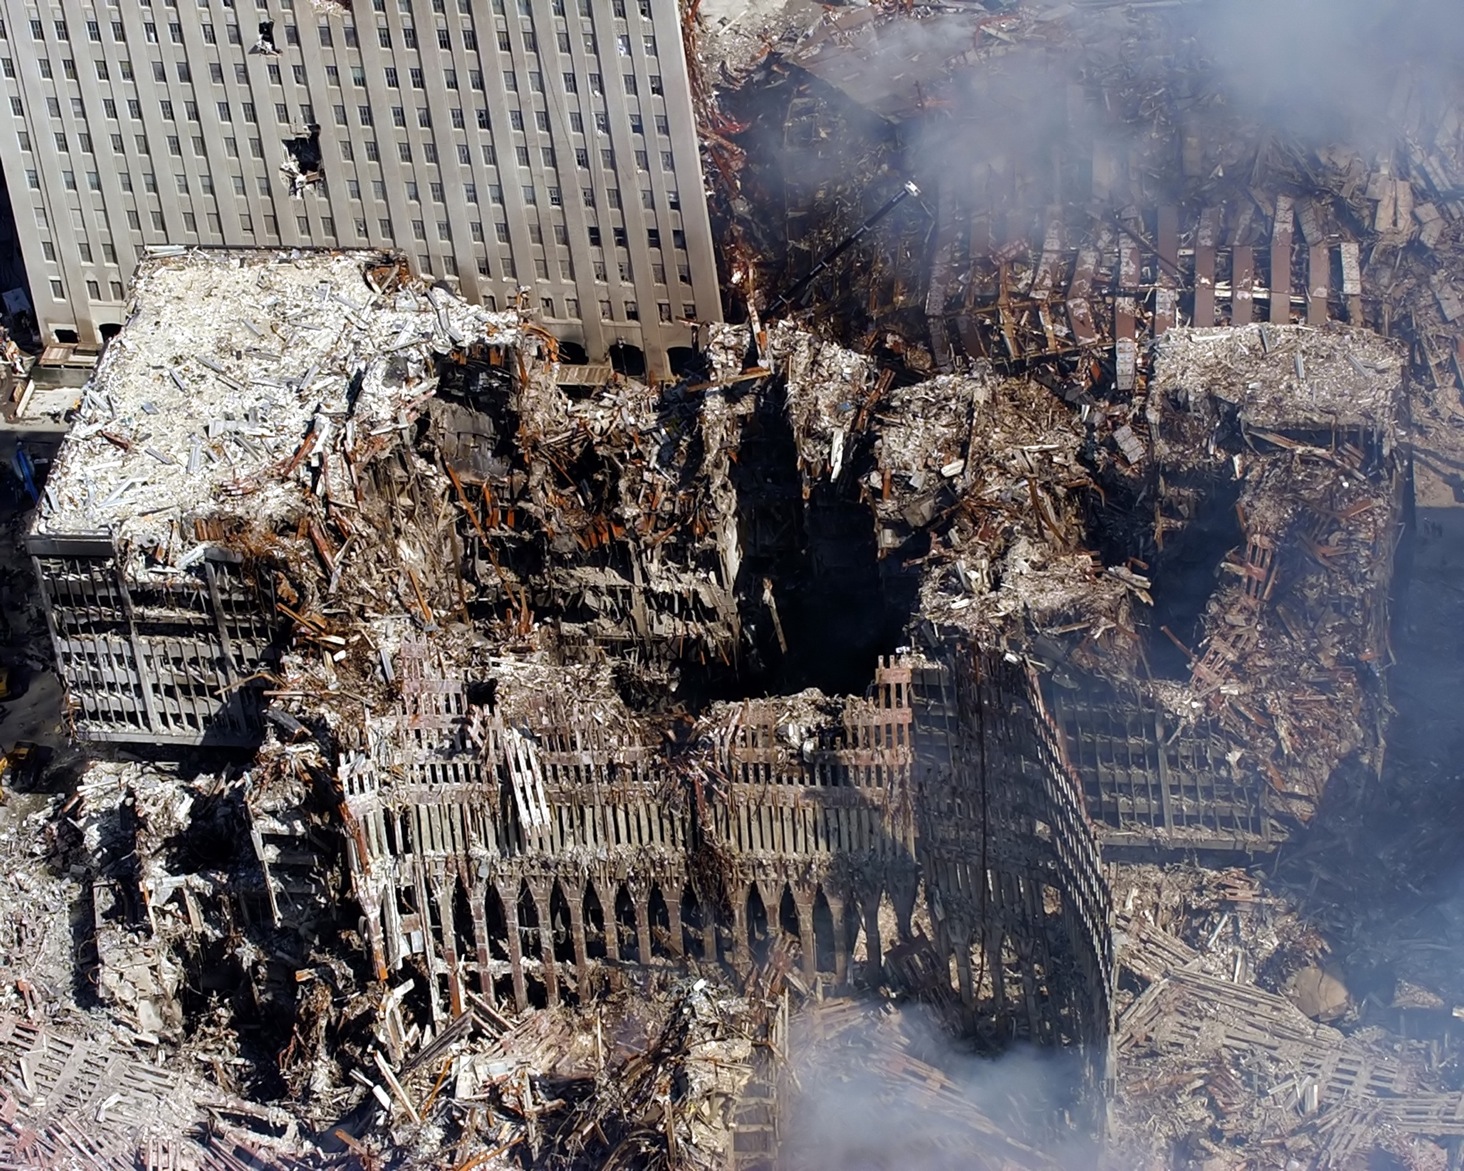 11η Σεπτεμβρίου: 20 χρόνια από τότε που άλλαξε ο κόσμος